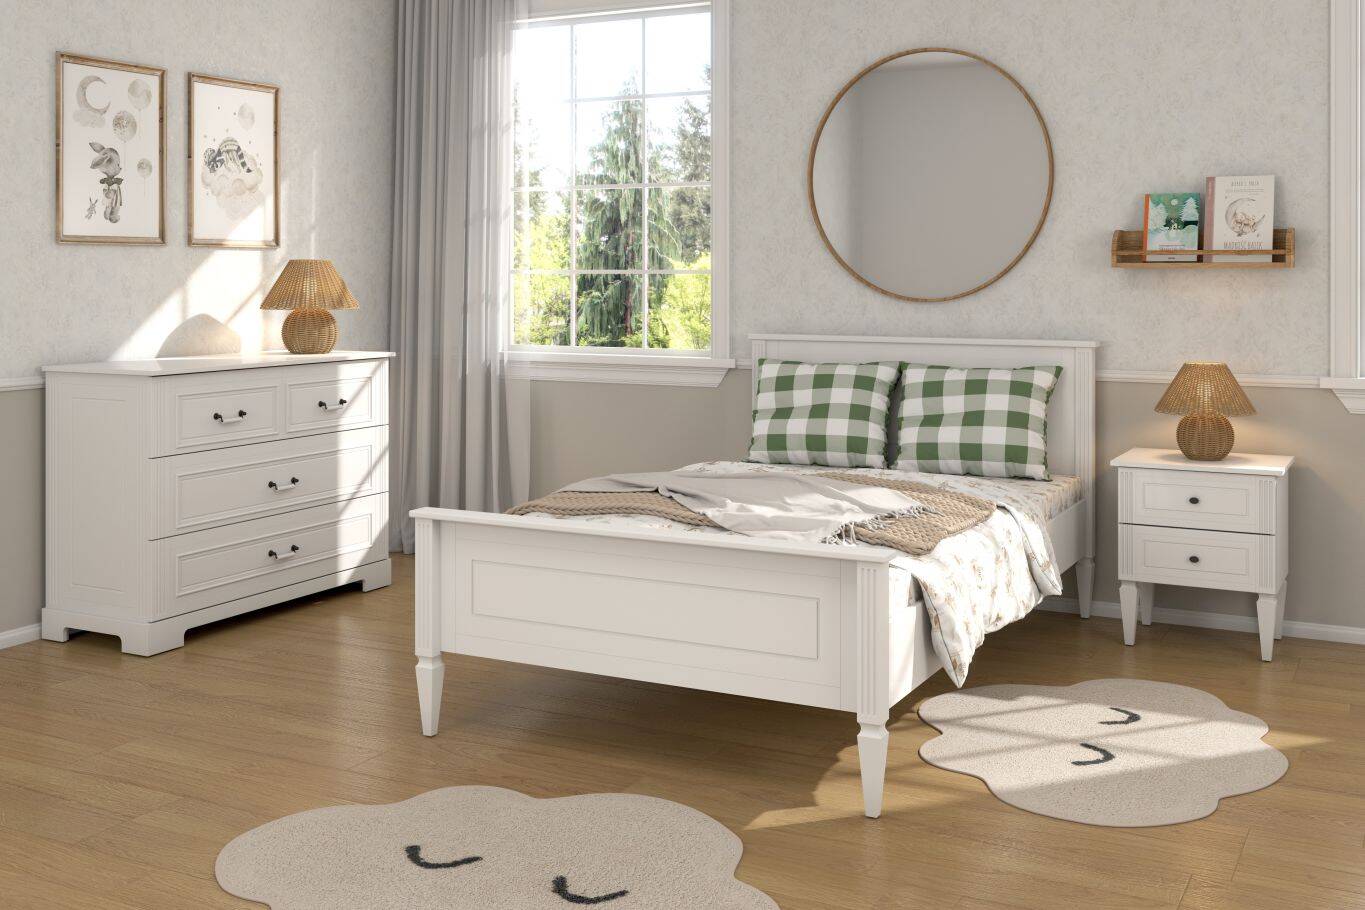 Łóżko Ines 120x200 z praktycznymi szafkami nocnymi: styl, komfort i funkcjonalność